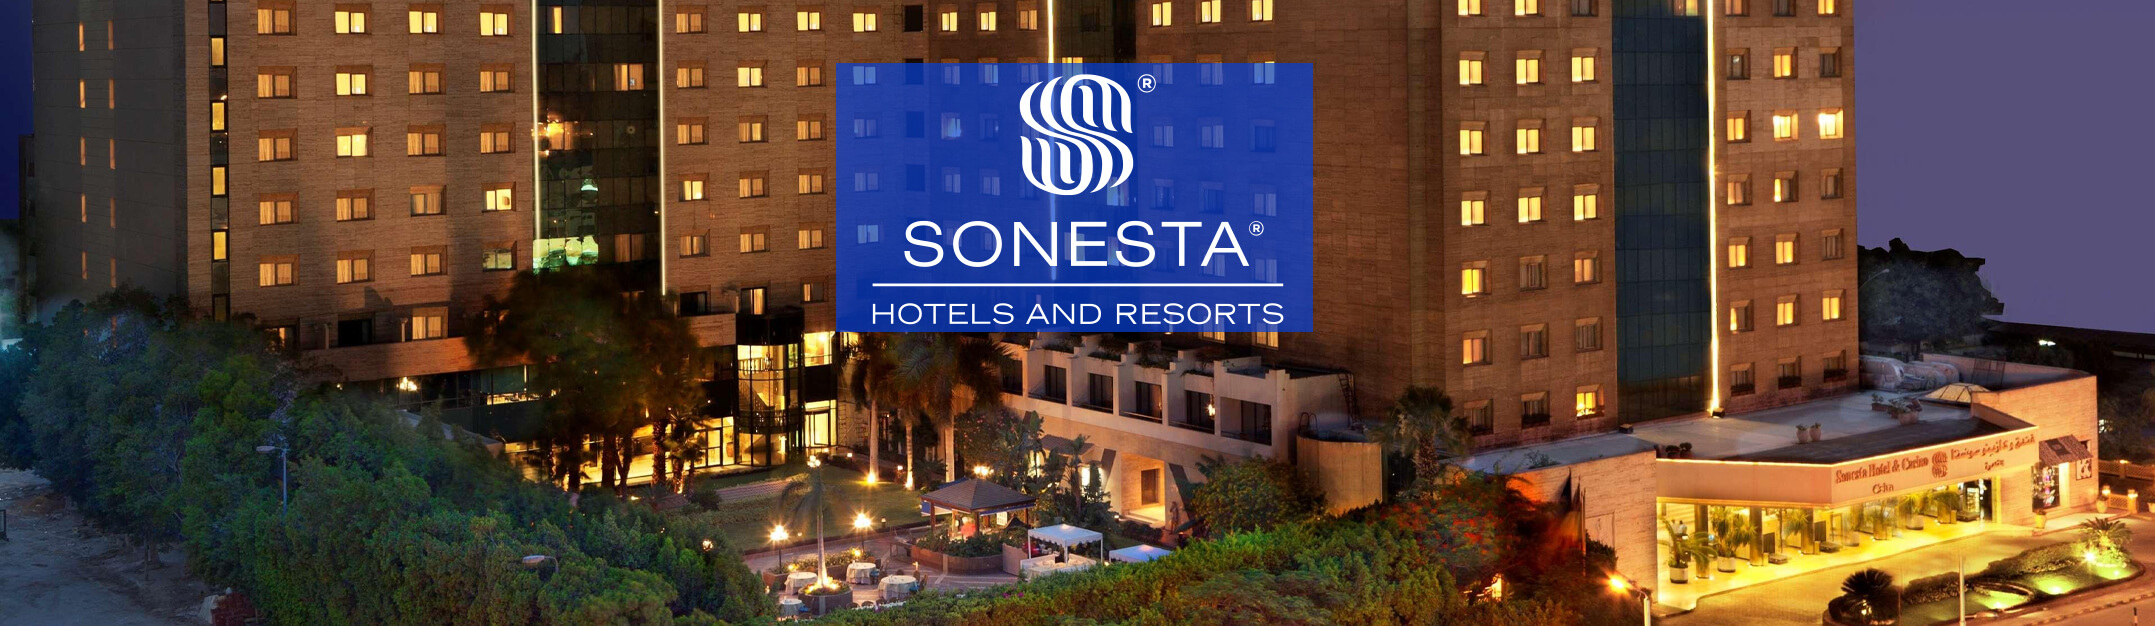 Sonesta Hotel, Tower & Casino